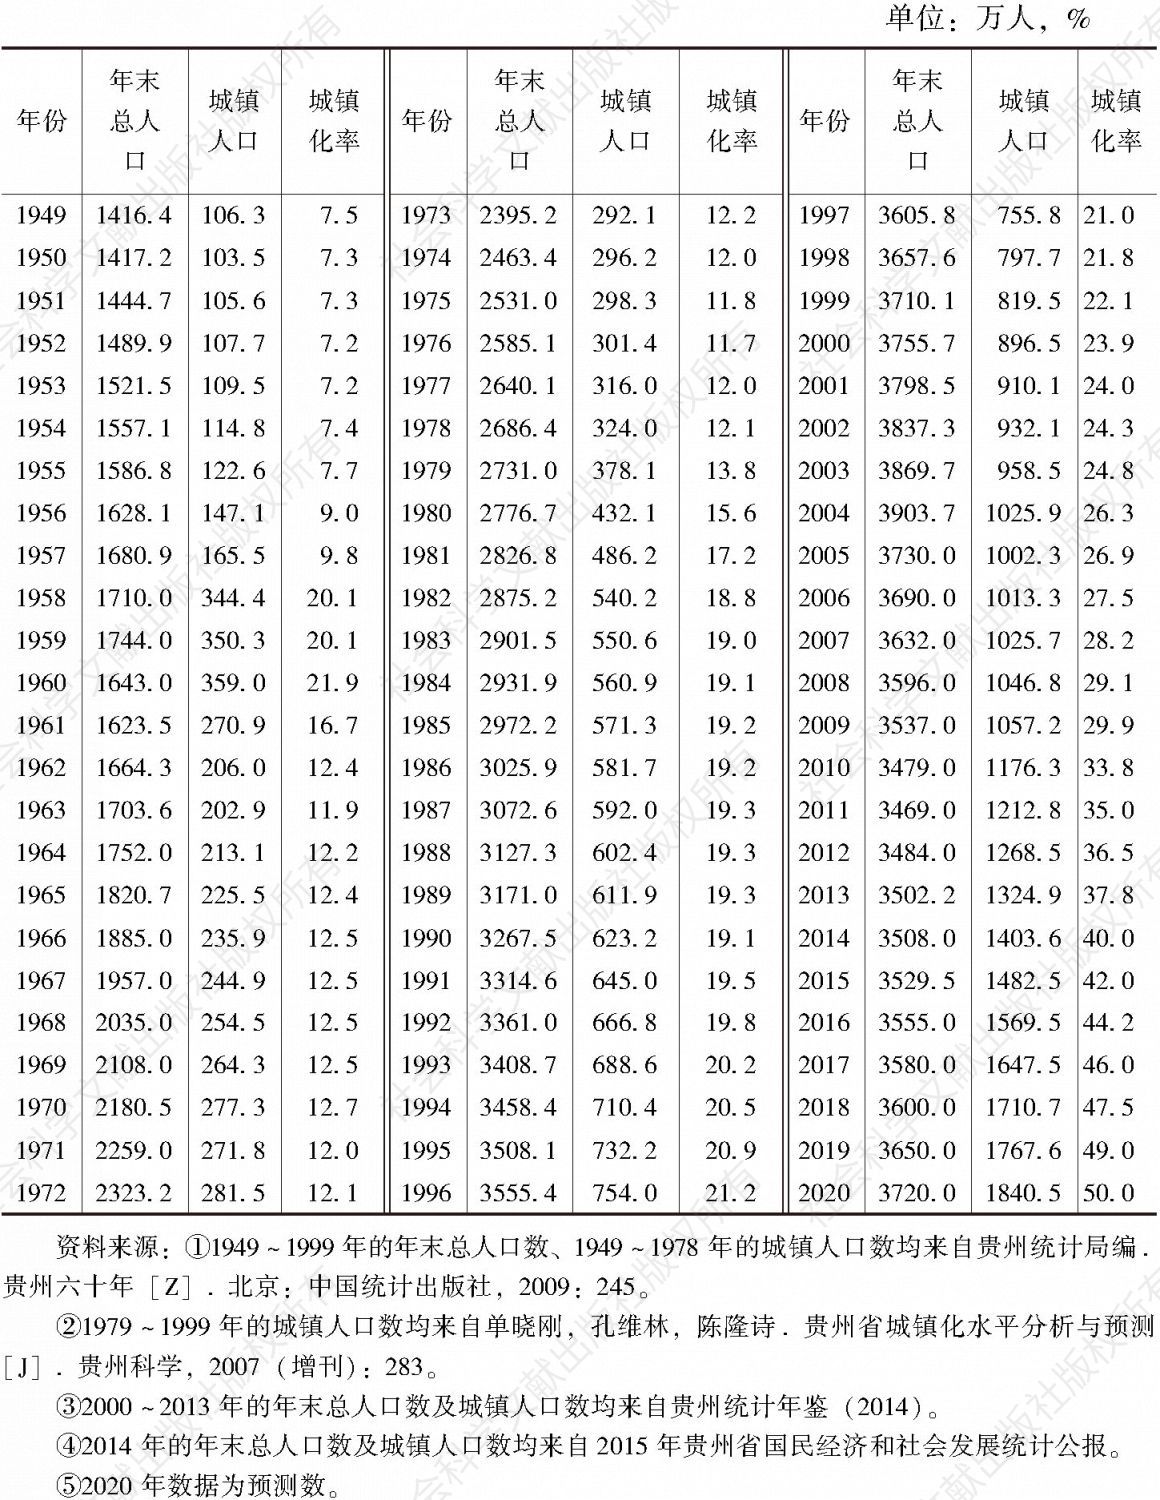 表2-1 1949～2020年贵州省城镇化发展情况